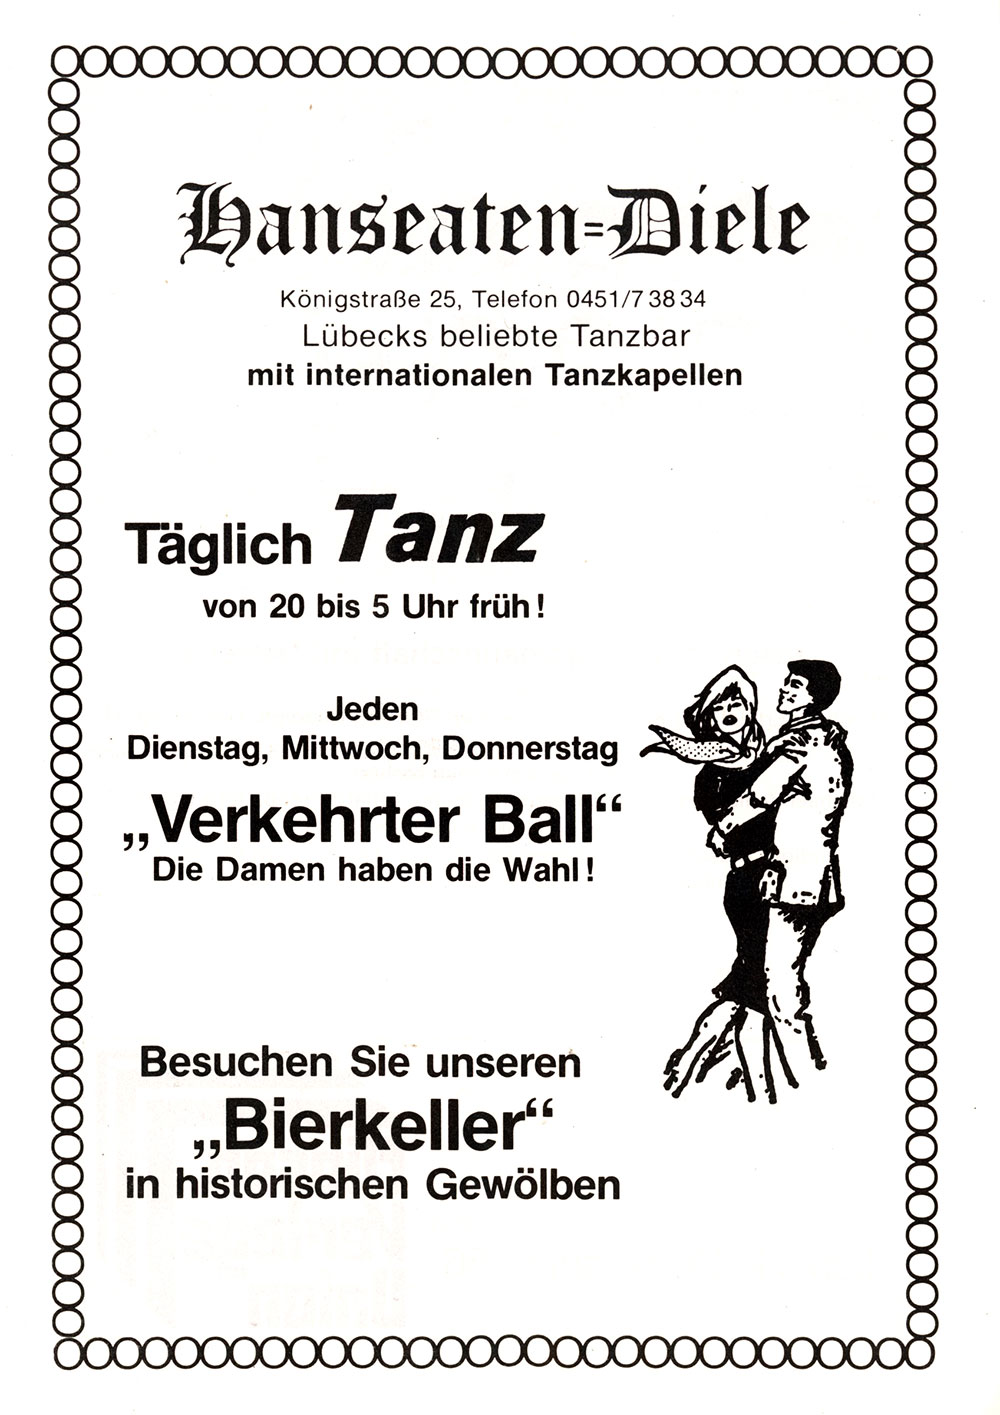 Der PHÖNIX Express v. 31.8.1980